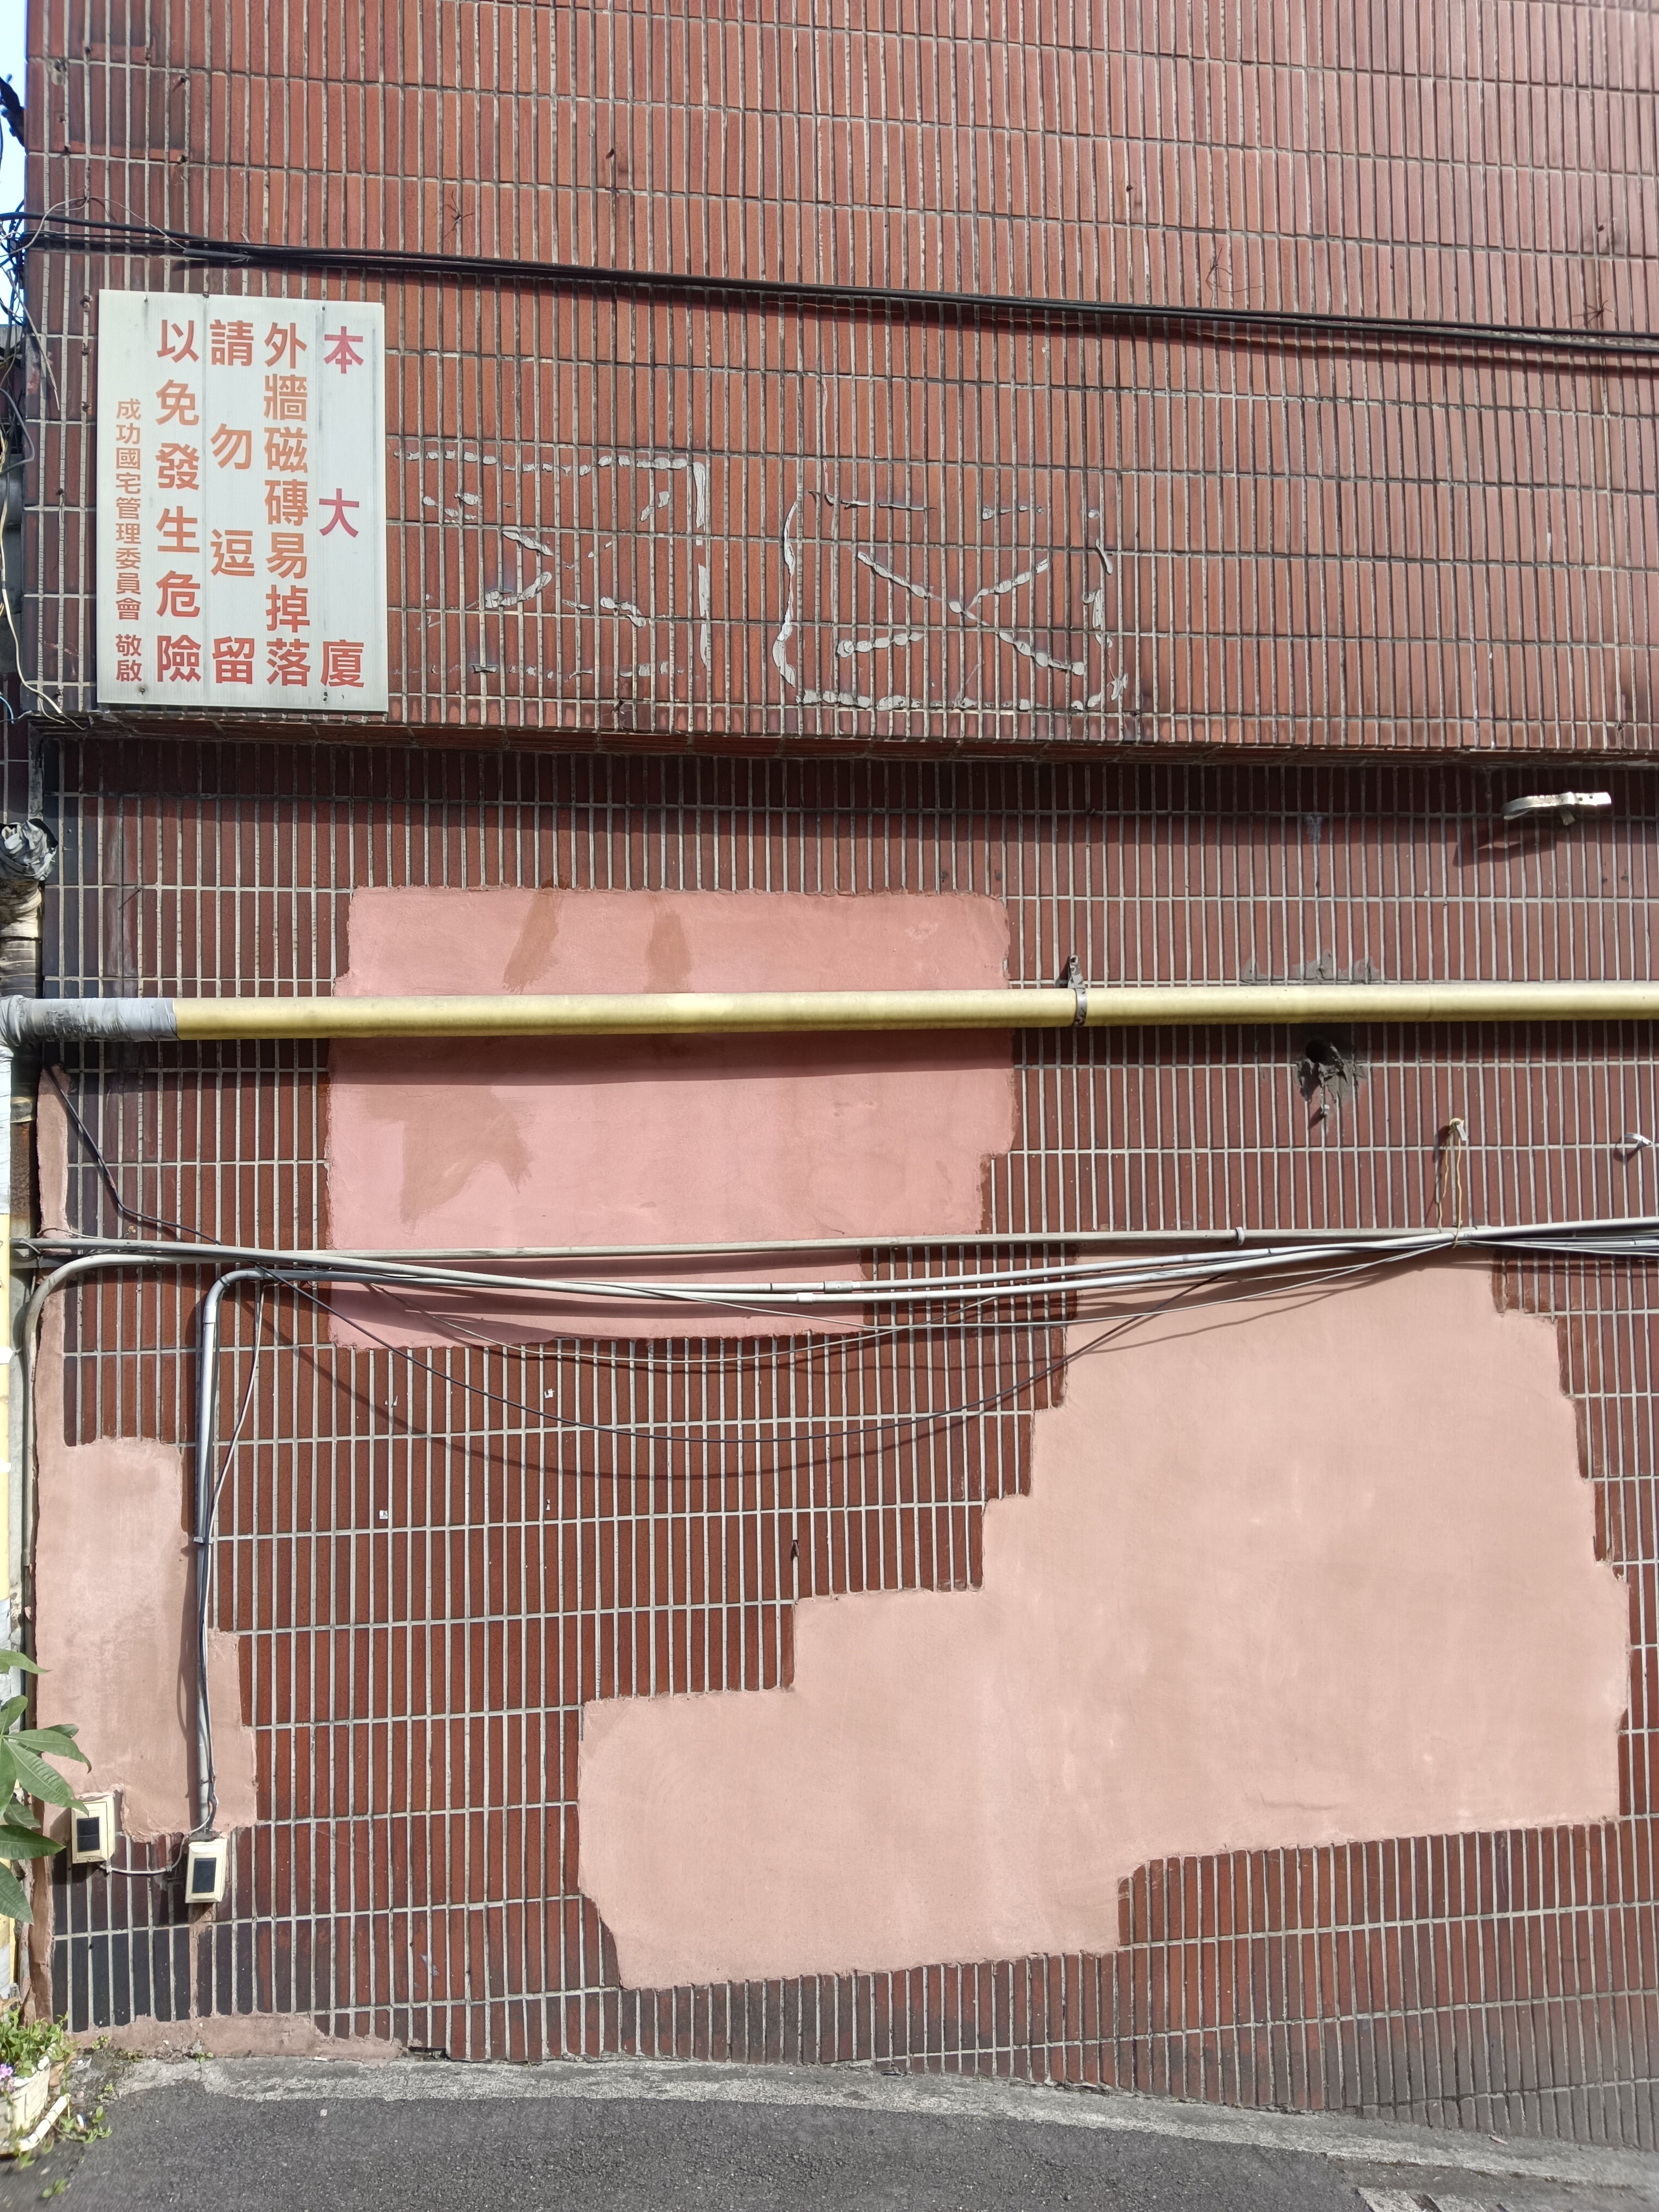 基隆市成功国宅社区外墙多处磁砖剥落后，事后涂抹弹性水泥补救，东一块、西一块如「癞痢头」。记者邱瑞杰／摄影